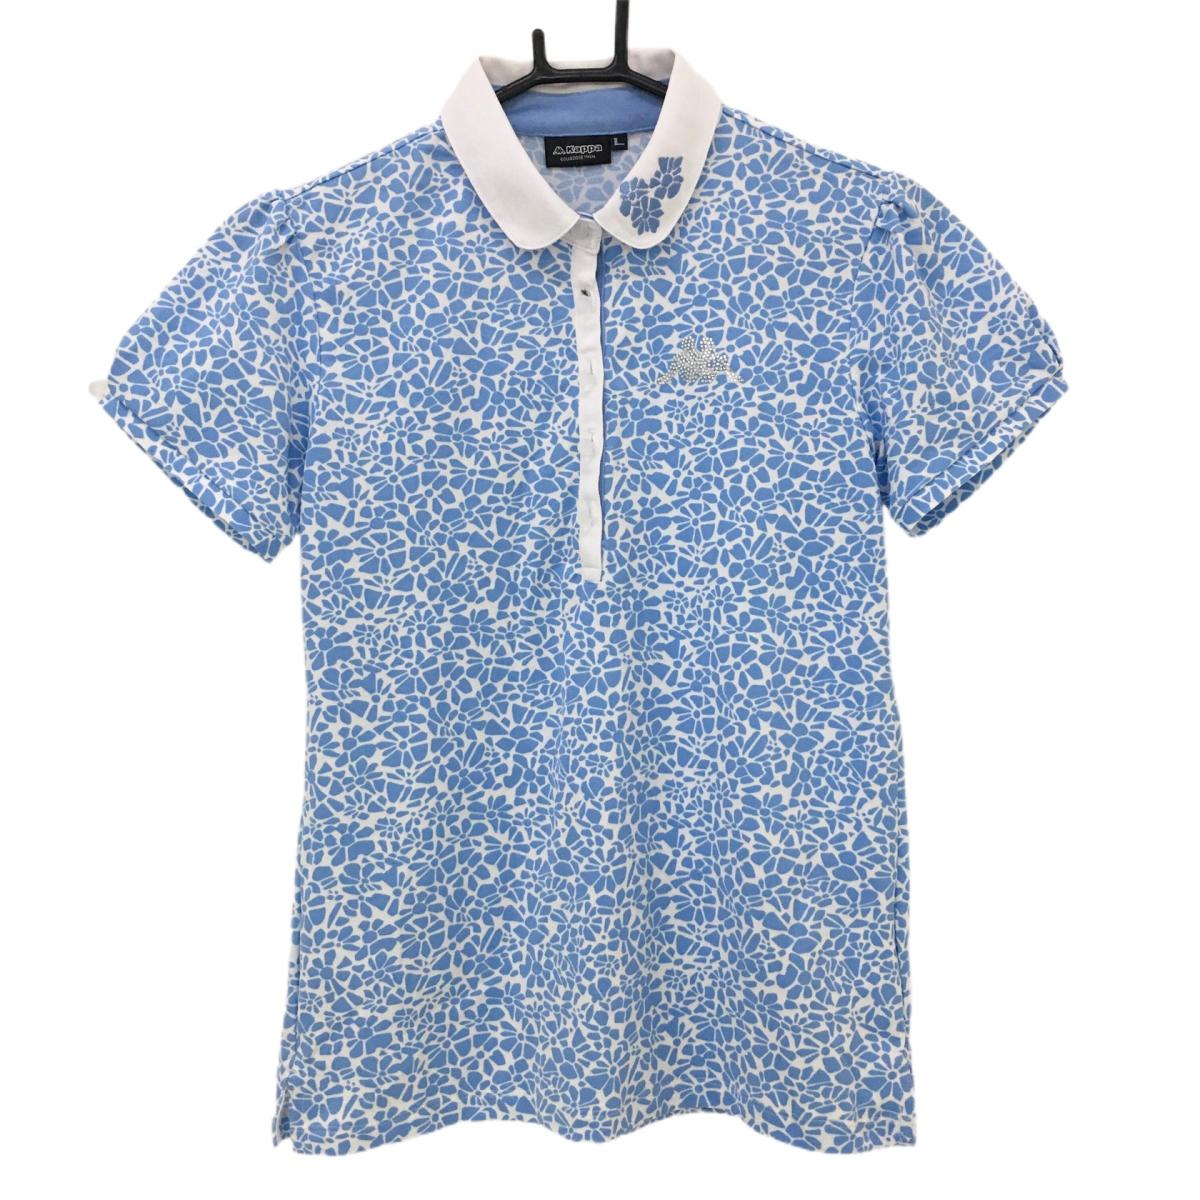 【美品】カッパ 半袖ポロシャツ ライトブルー×白 総柄 ラインストーン  レディース L ゴルフウェア Kappa